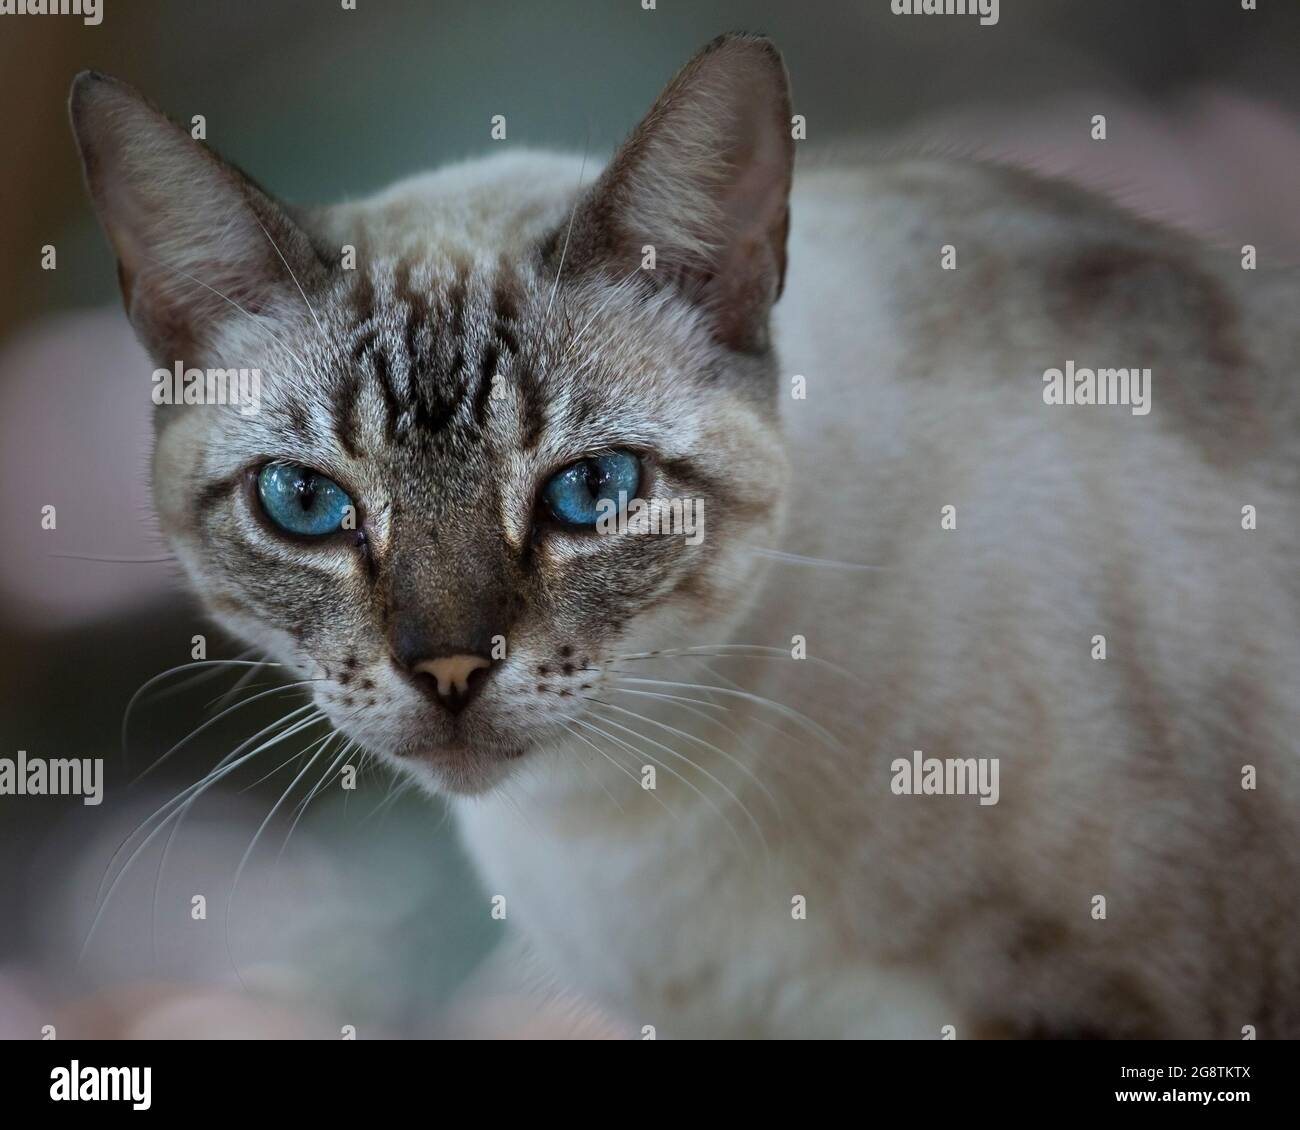 Gatto tabby dall'occhio blu a faccia in su Foto Stock